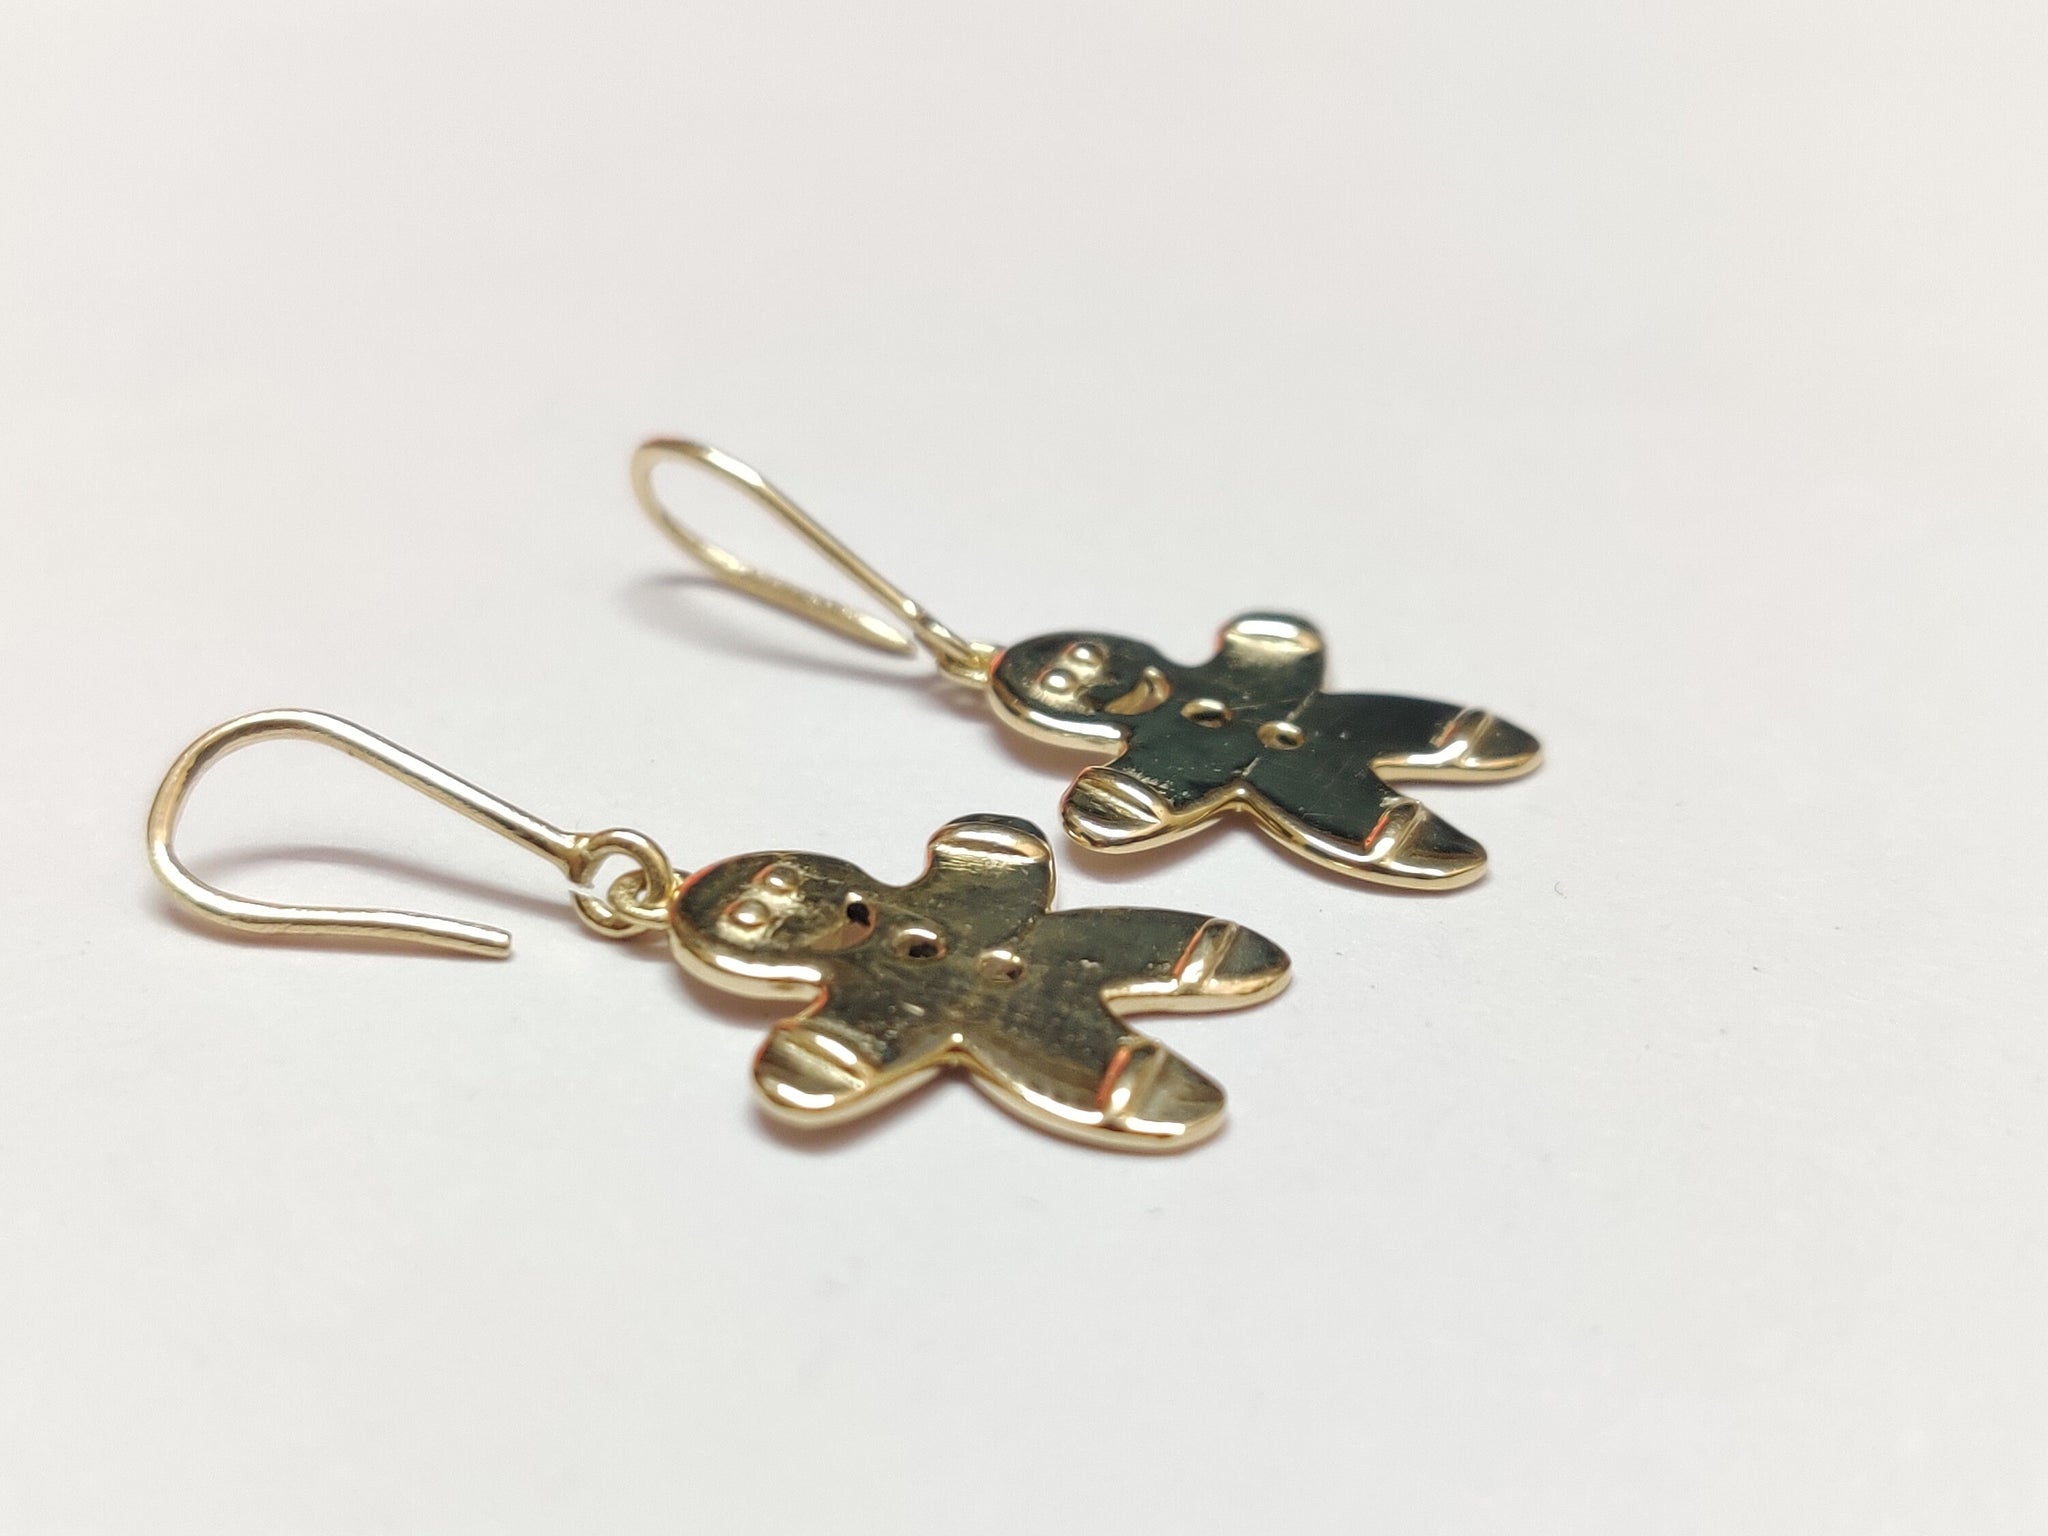 14K Gold Earrings 14K Gold Dainty Earrings Gold Gingerbread man Earrings Tiny Gold Earrings Solid Gold Light Earrings Cute Earrings